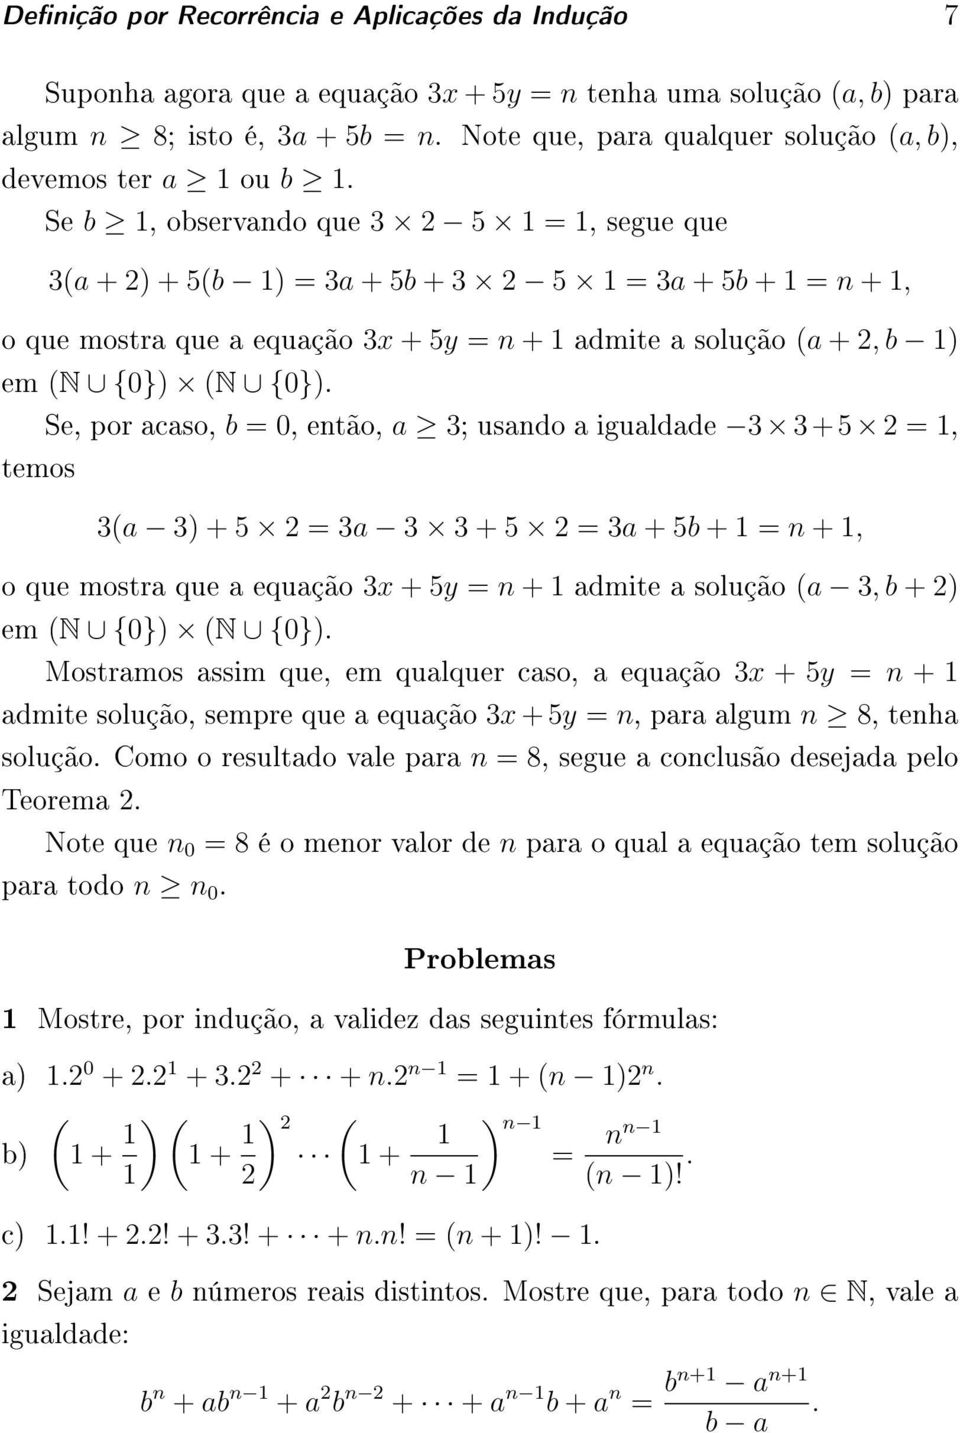 Se b 1, observando que 3 5 1 = 1, segue que 3(a + ) + 5(b 1) = 3a + 5b + 3 5 1 = 3a + 5b + 1 = n + 1, o que mostra que a equação 3x + 5y = n + 1 admite a solução (a +, b 1) em (N {0}) (N {0}).